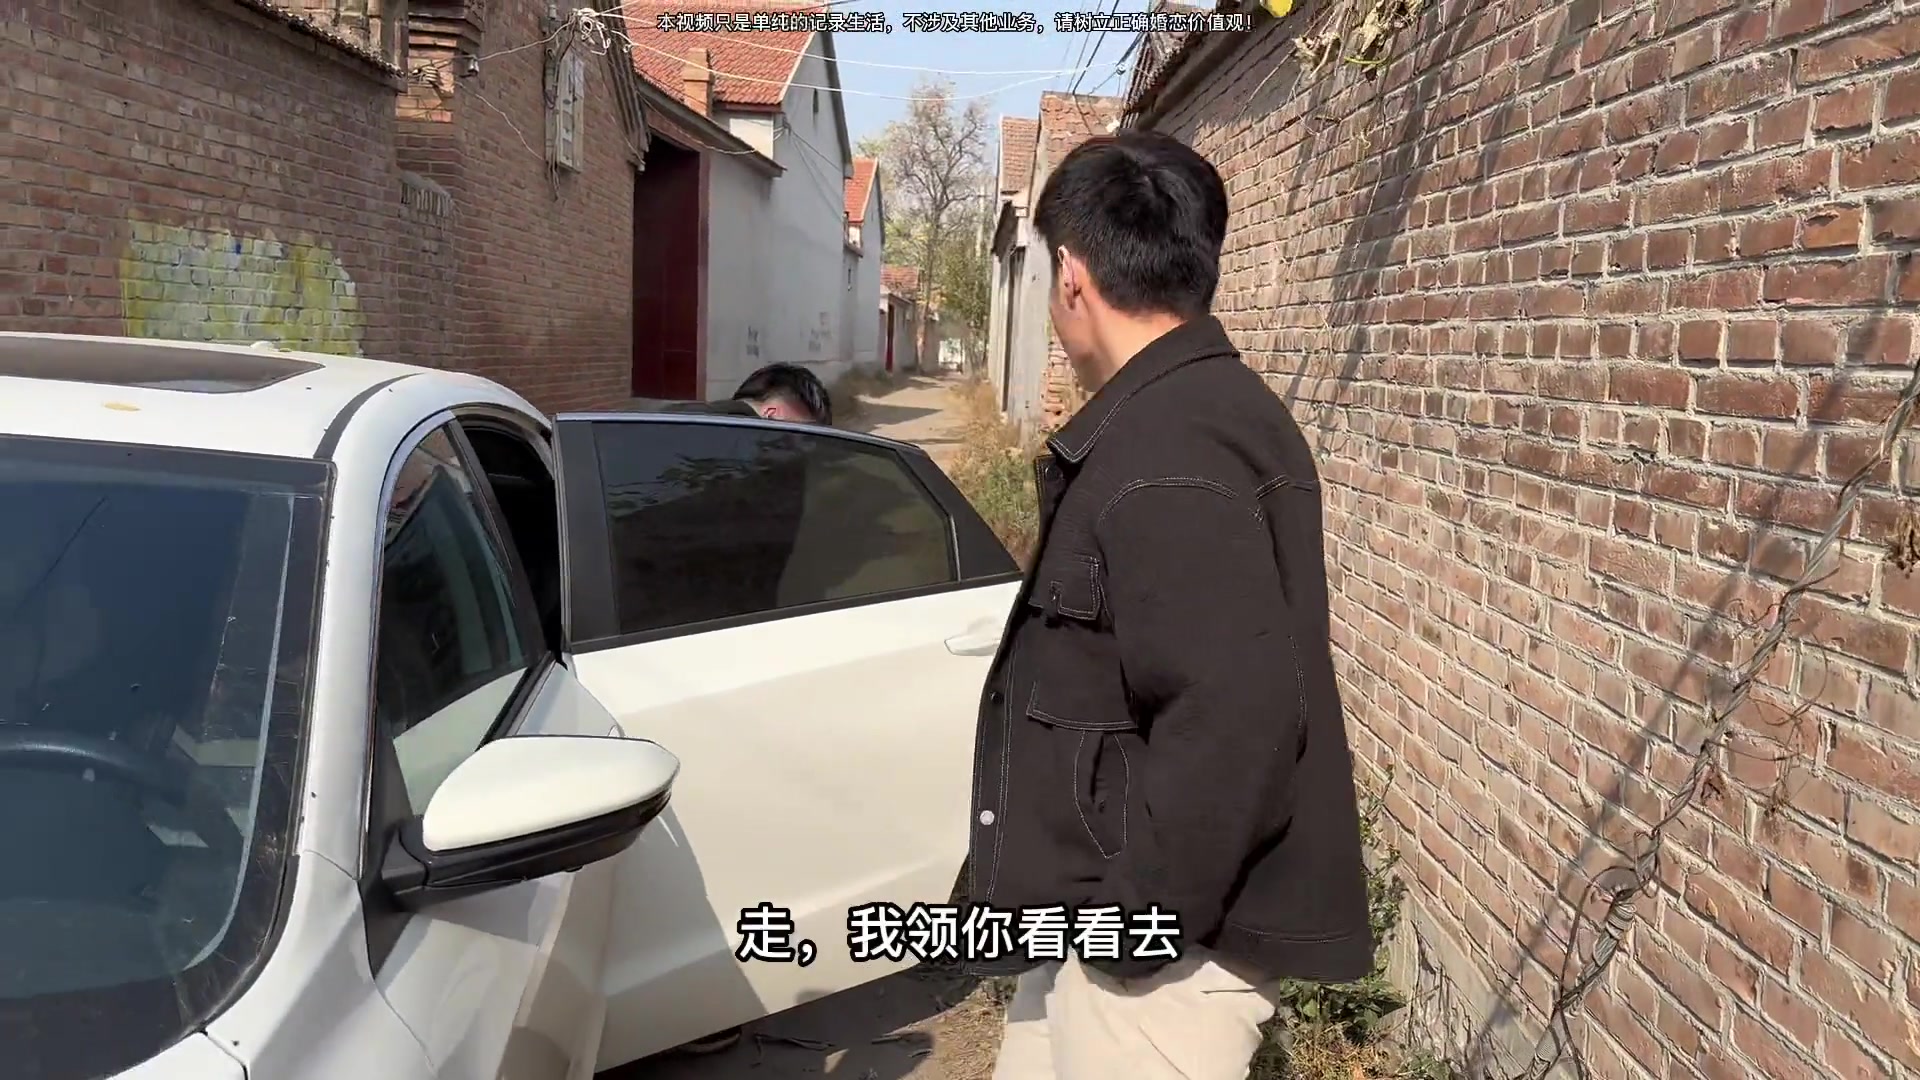 中国小伙分享国外的老丈人和丈母娘对他怎么样-汪汪在亚美尼亚-汪汪在亚美尼亚-哔哩哔哩视频